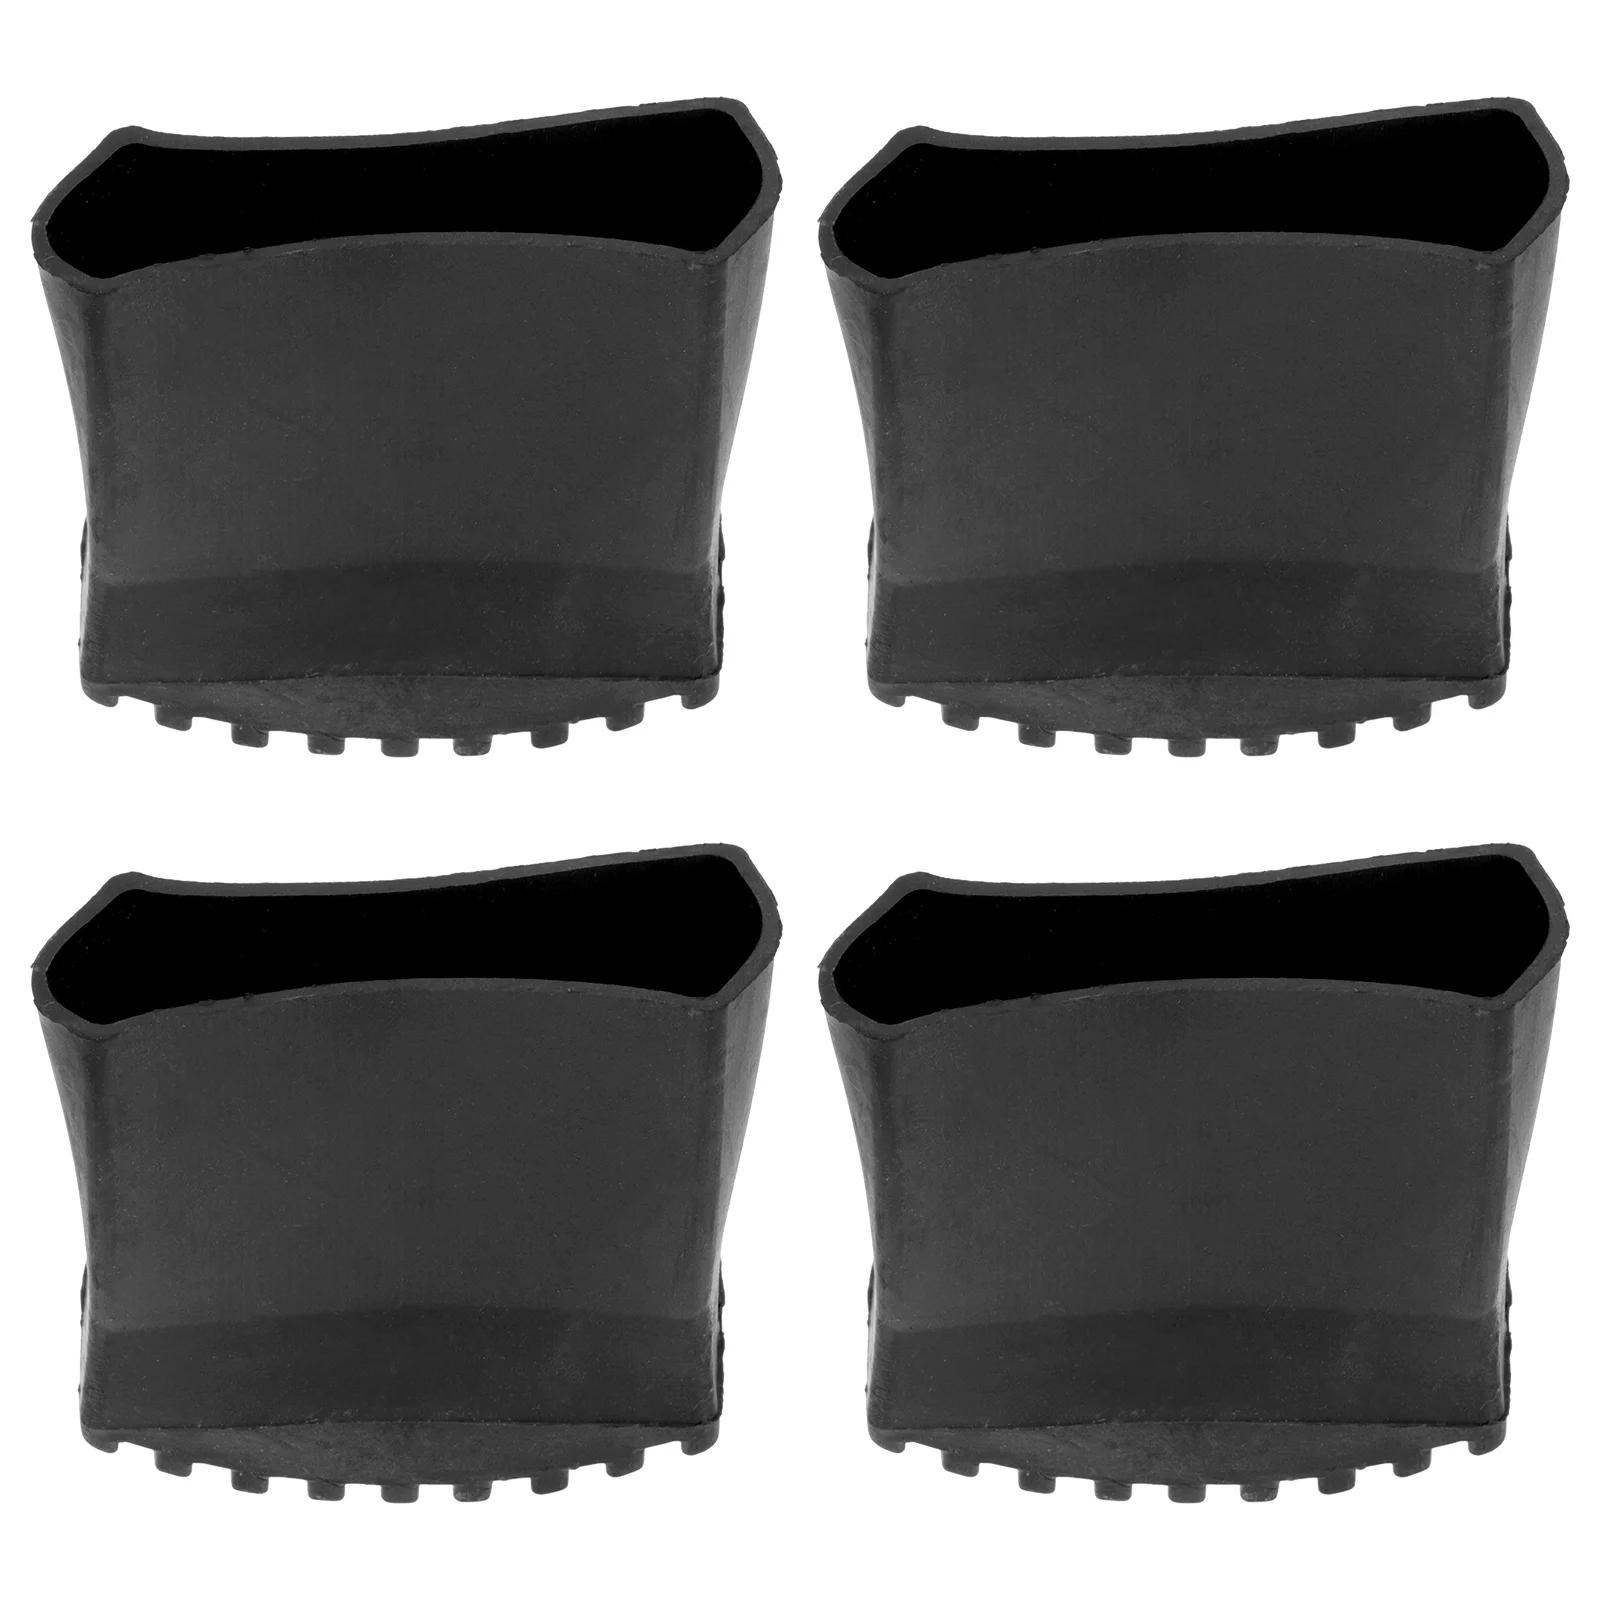 

Подставки для лестничных ножек коврик для упора безопасные резиновые защитные чехлы поставки Нескользящие износостойкие коврики аксессуары для ножек защитные стулья